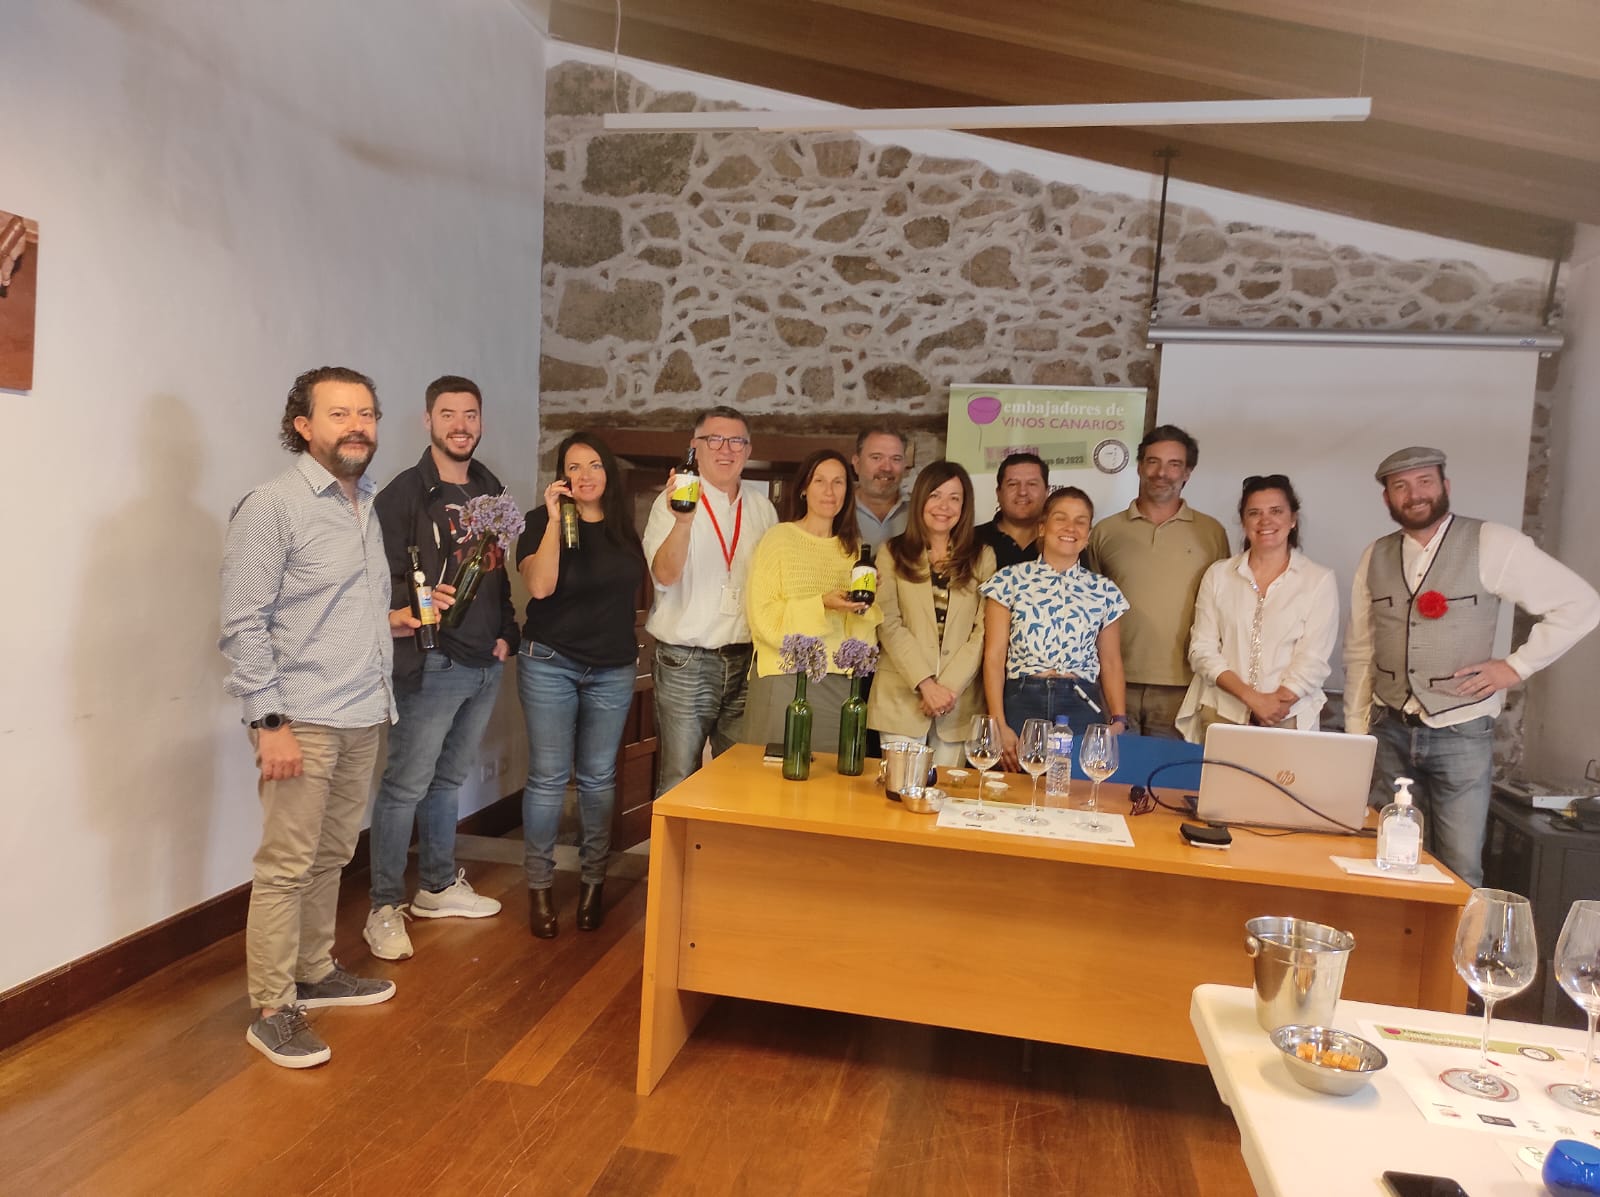 Embajadores de Vinos Canarios: promoviendo el encanto vitivinícola de las Islas